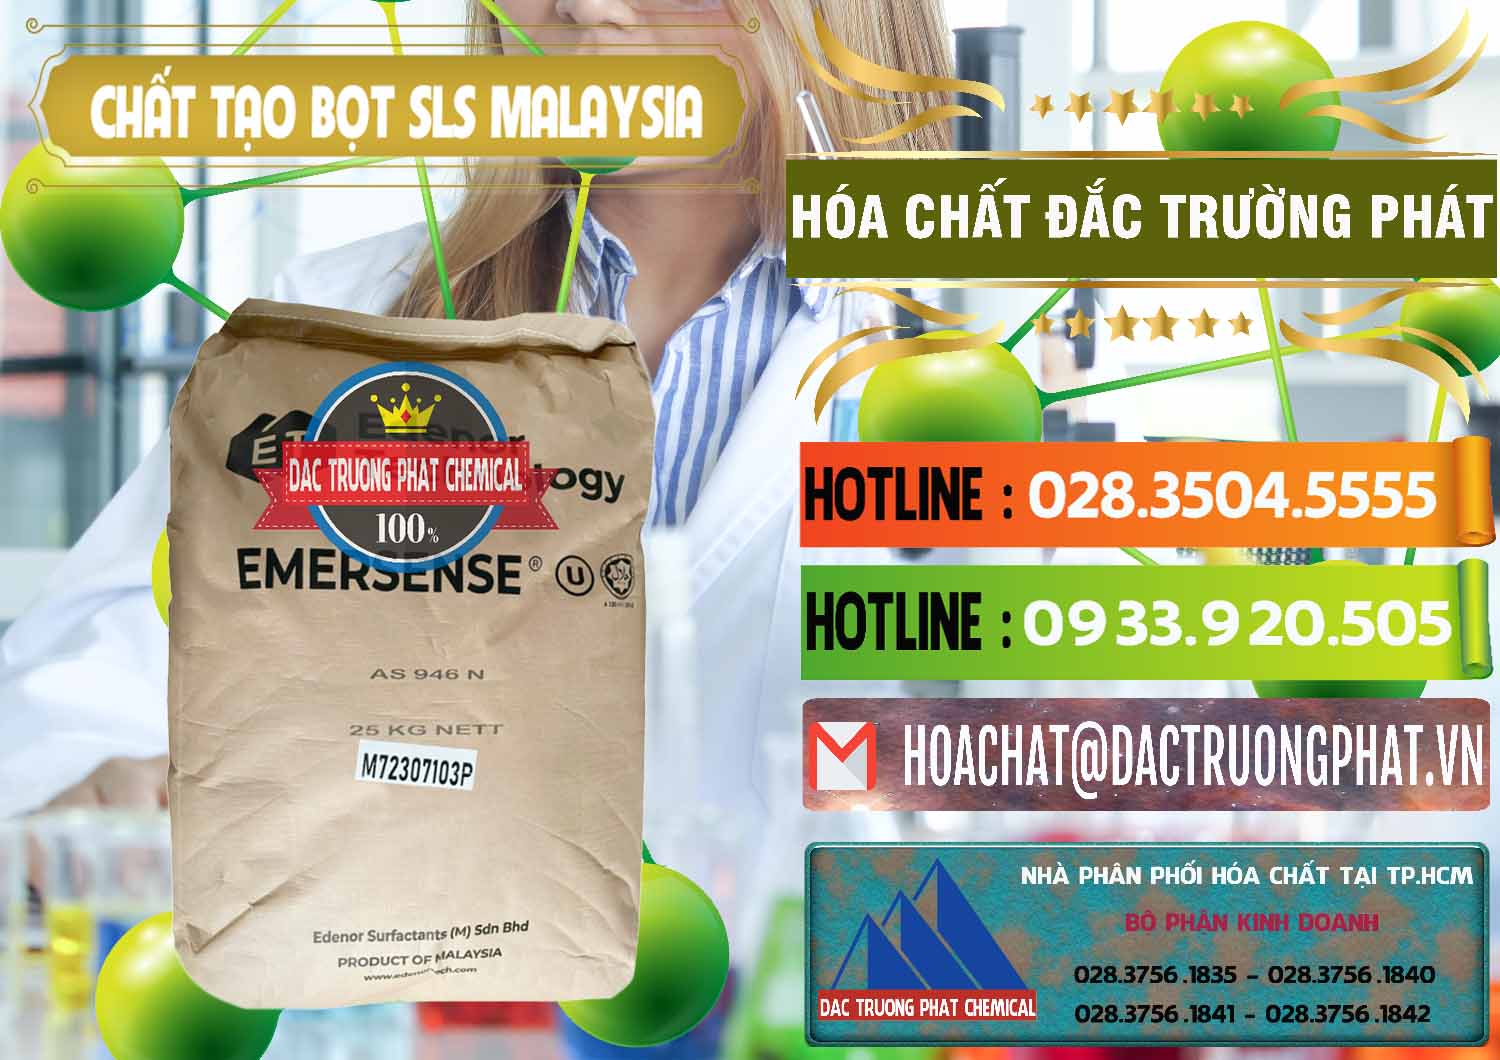 Đơn vị chuyên bán và phân phối Chất Tạo Bọt SLS Emersense Mã Lai Malaysia - 0381 - Nhà nhập khẩu ( cung cấp ) hóa chất tại TP.HCM - cungcaphoachat.com.vn